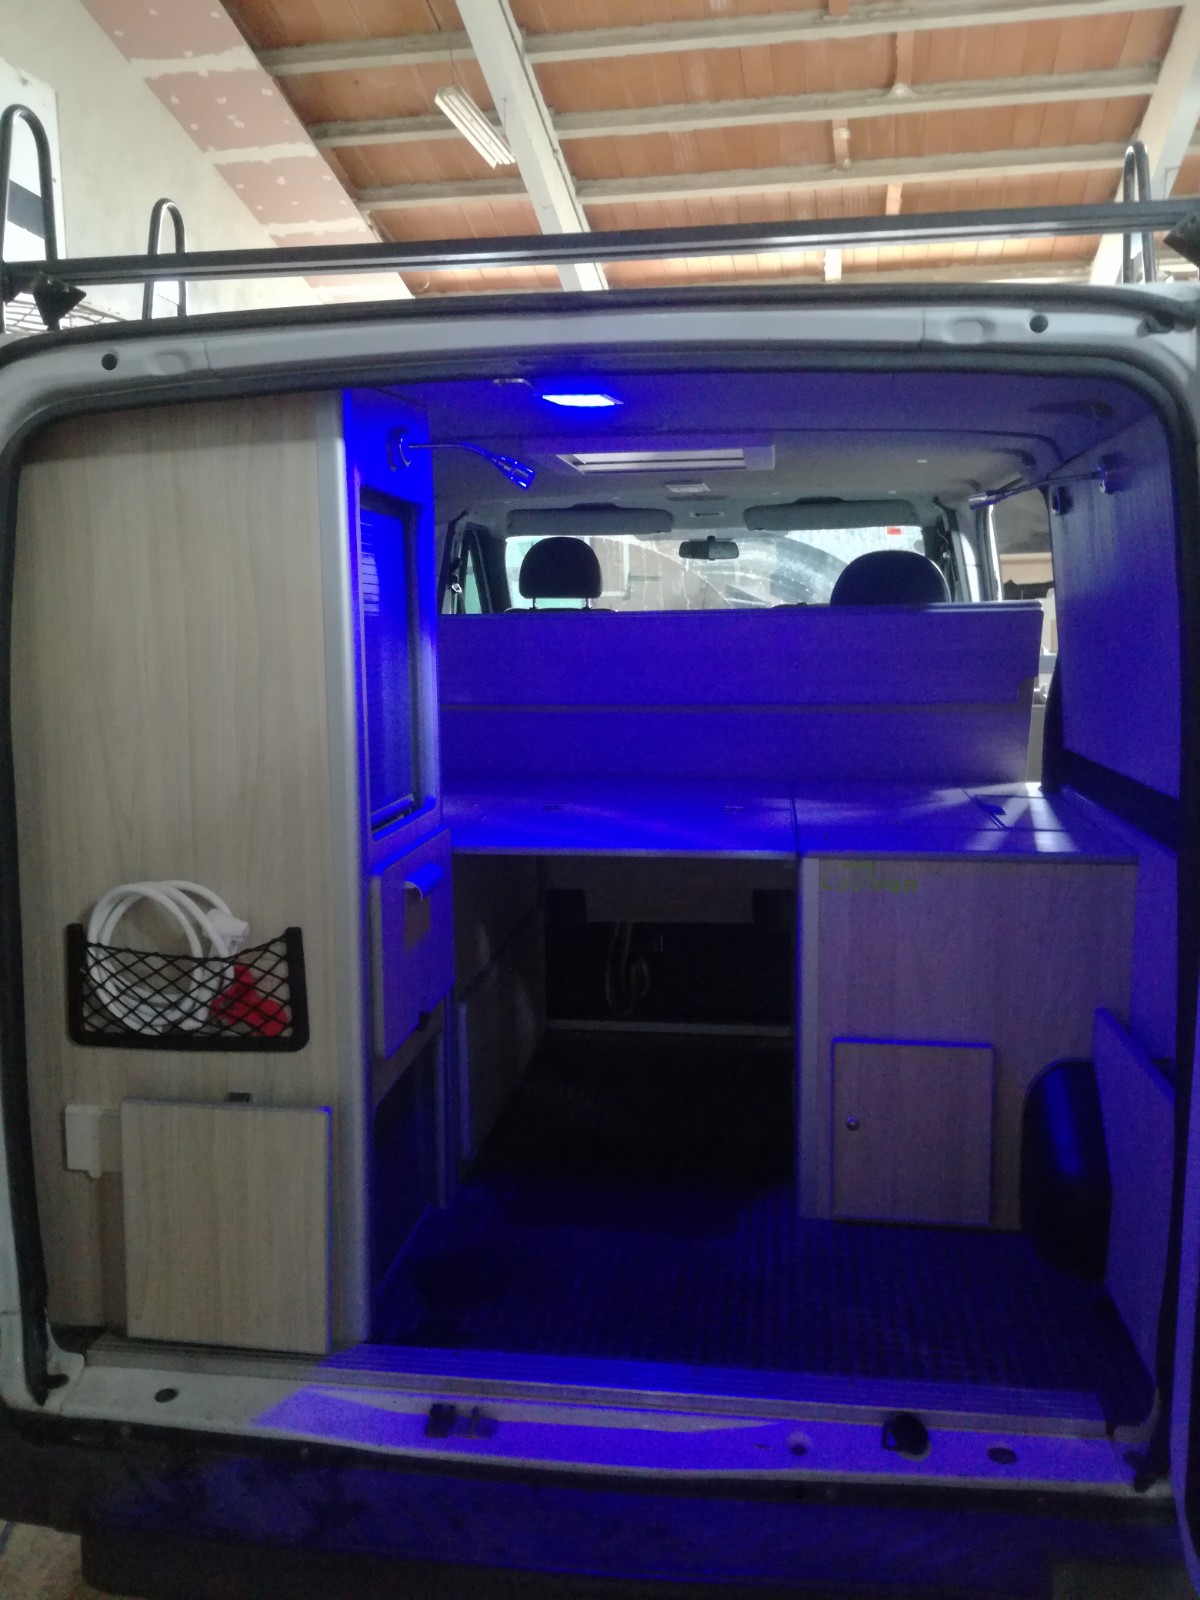 ¿Cuál es el proceso de instalación y configuración del mueble camper en la furgoneta?